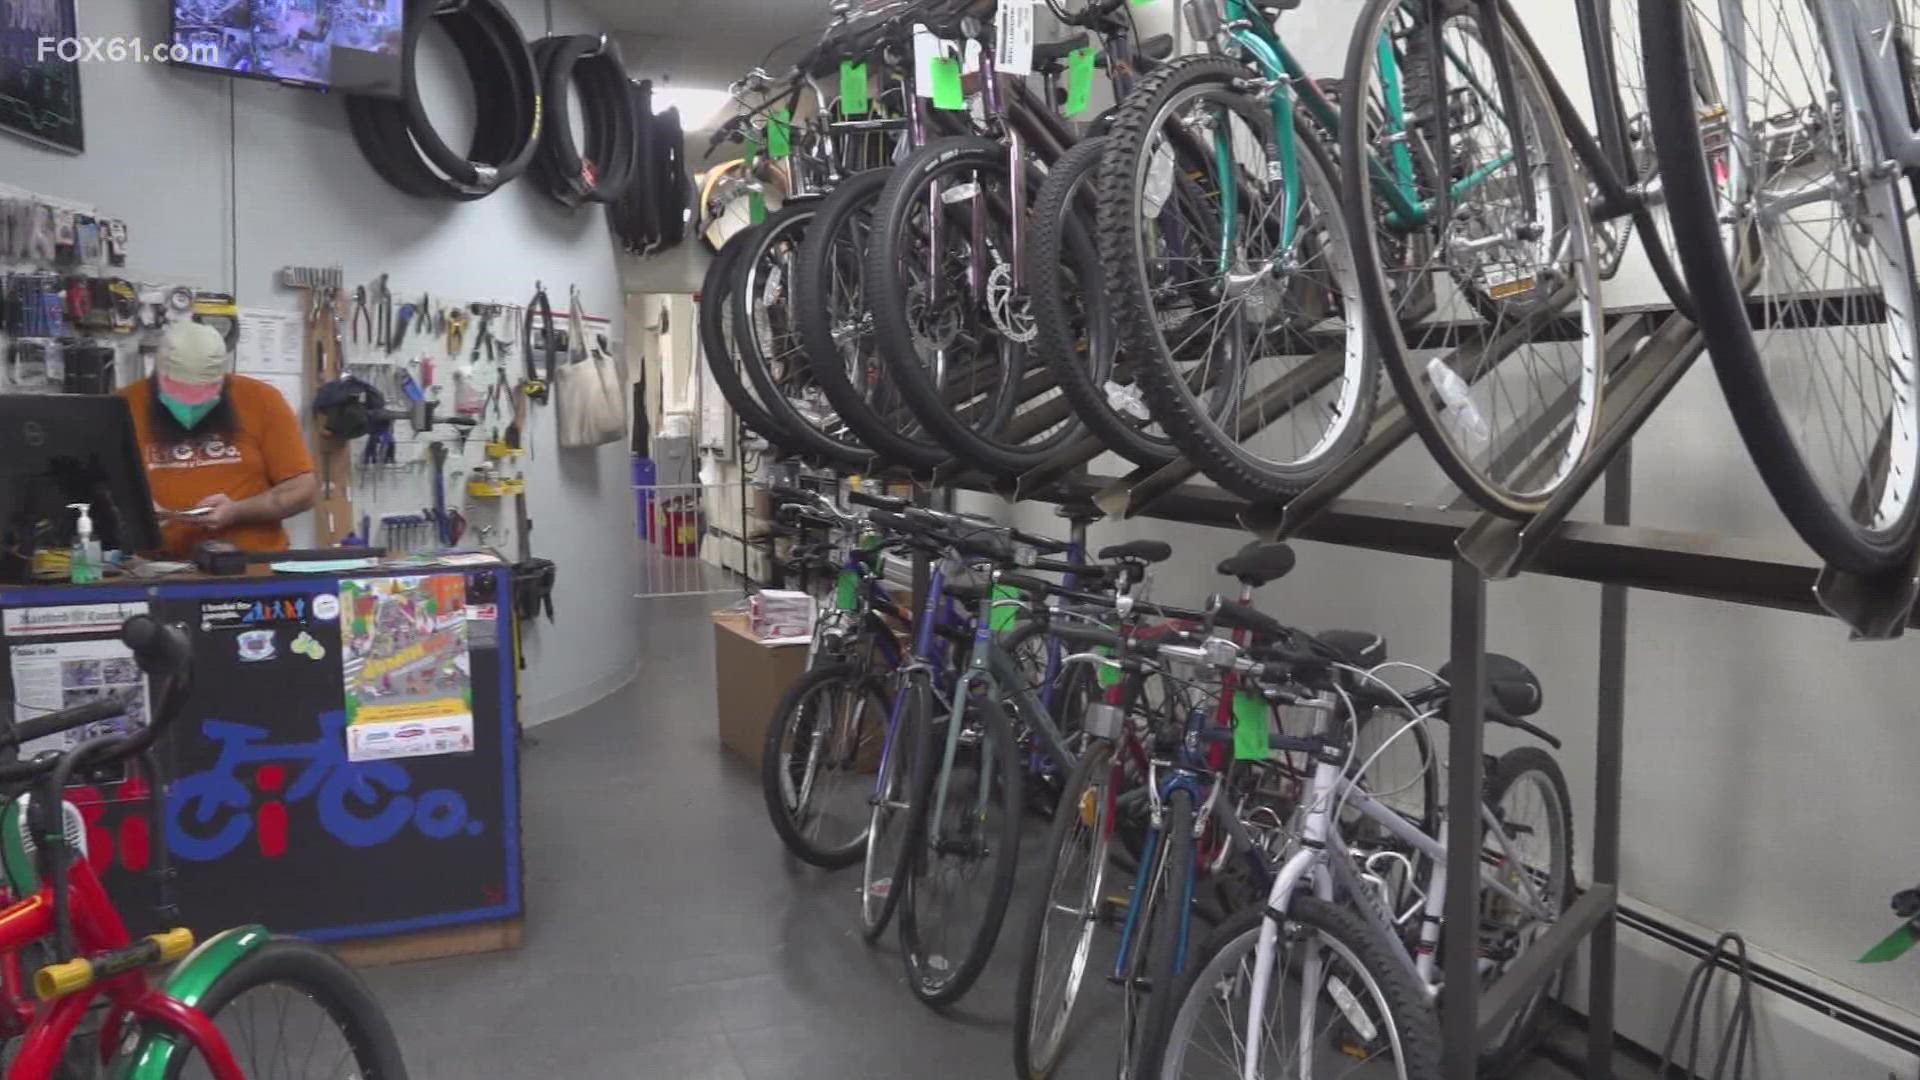 Bici公司是哈特福德唯一的自行车店。